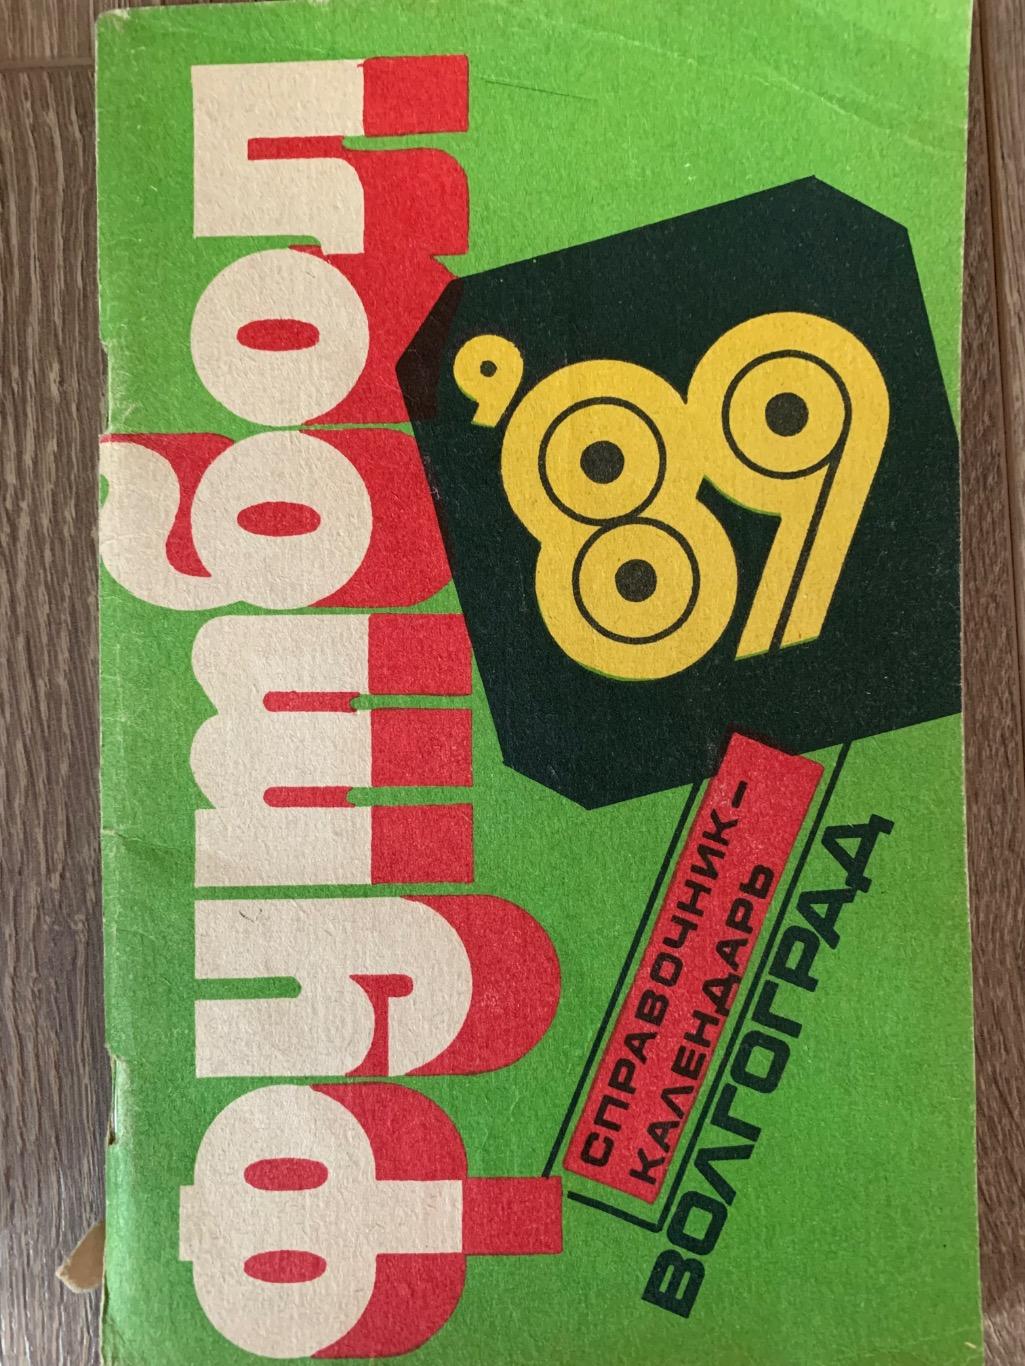 Календарь справочник Ротор Волгоград 1989